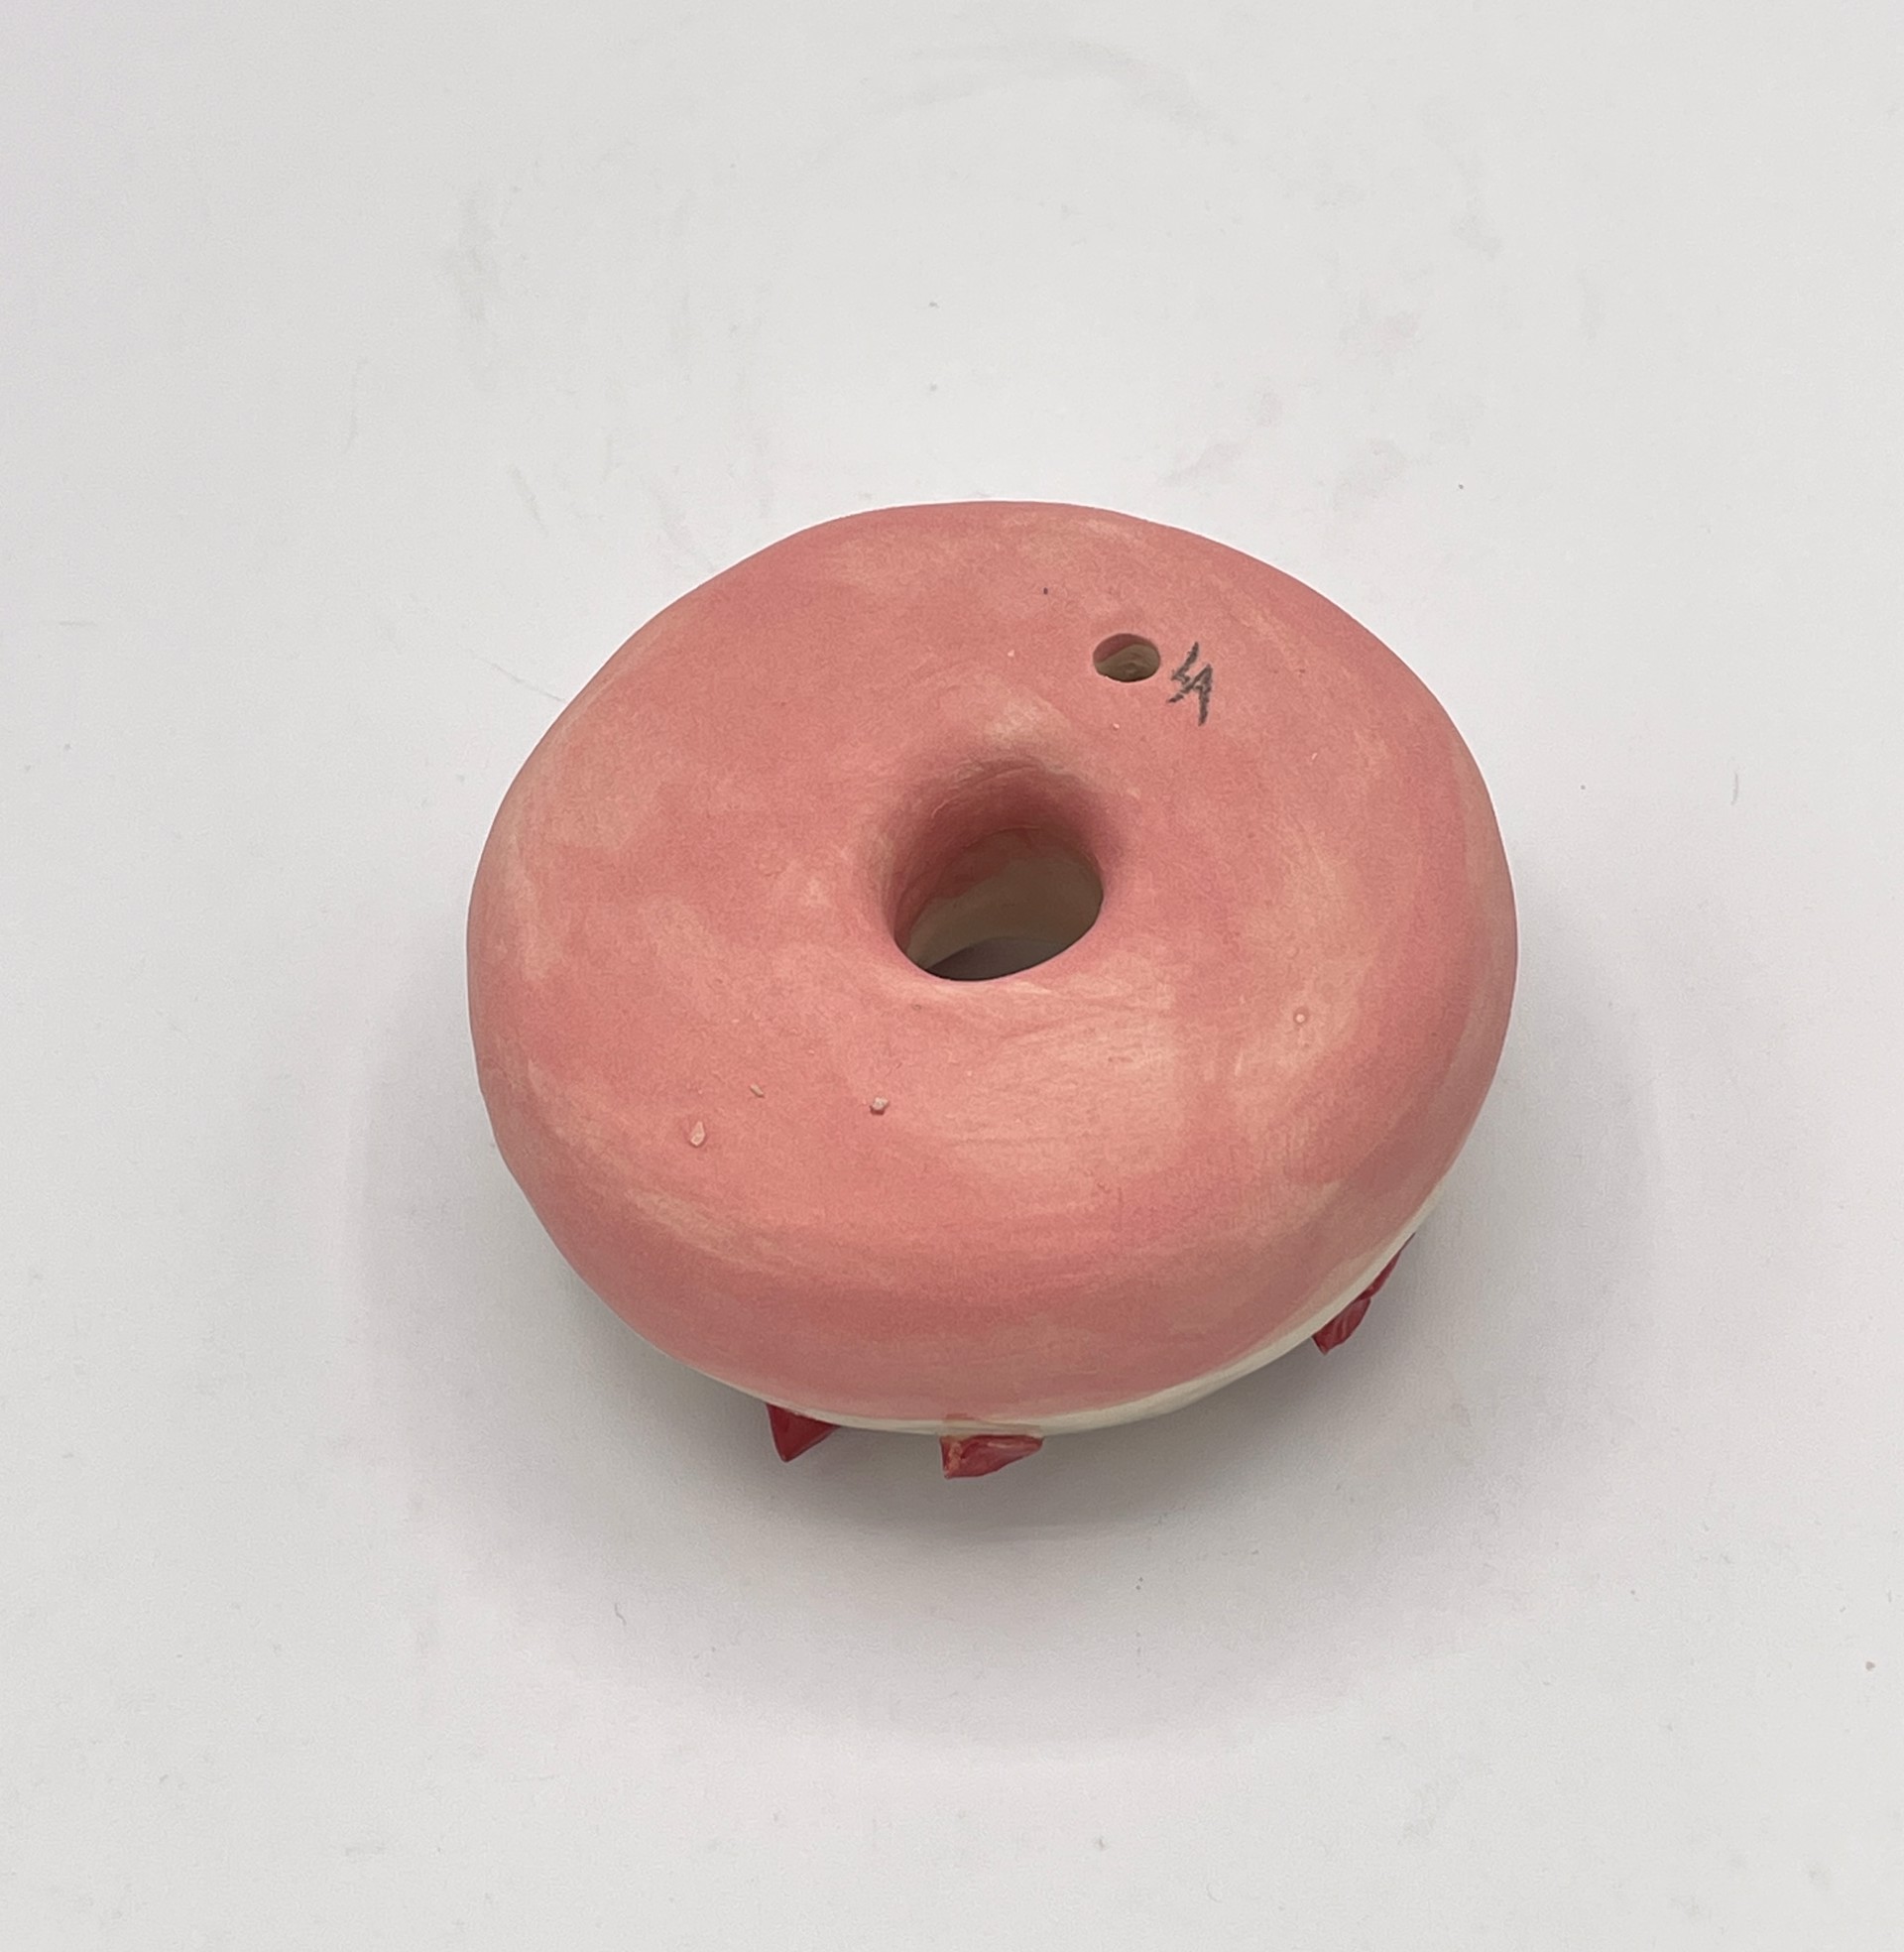 Strawberry Donut with Sprinkles by Liv Antonecchia